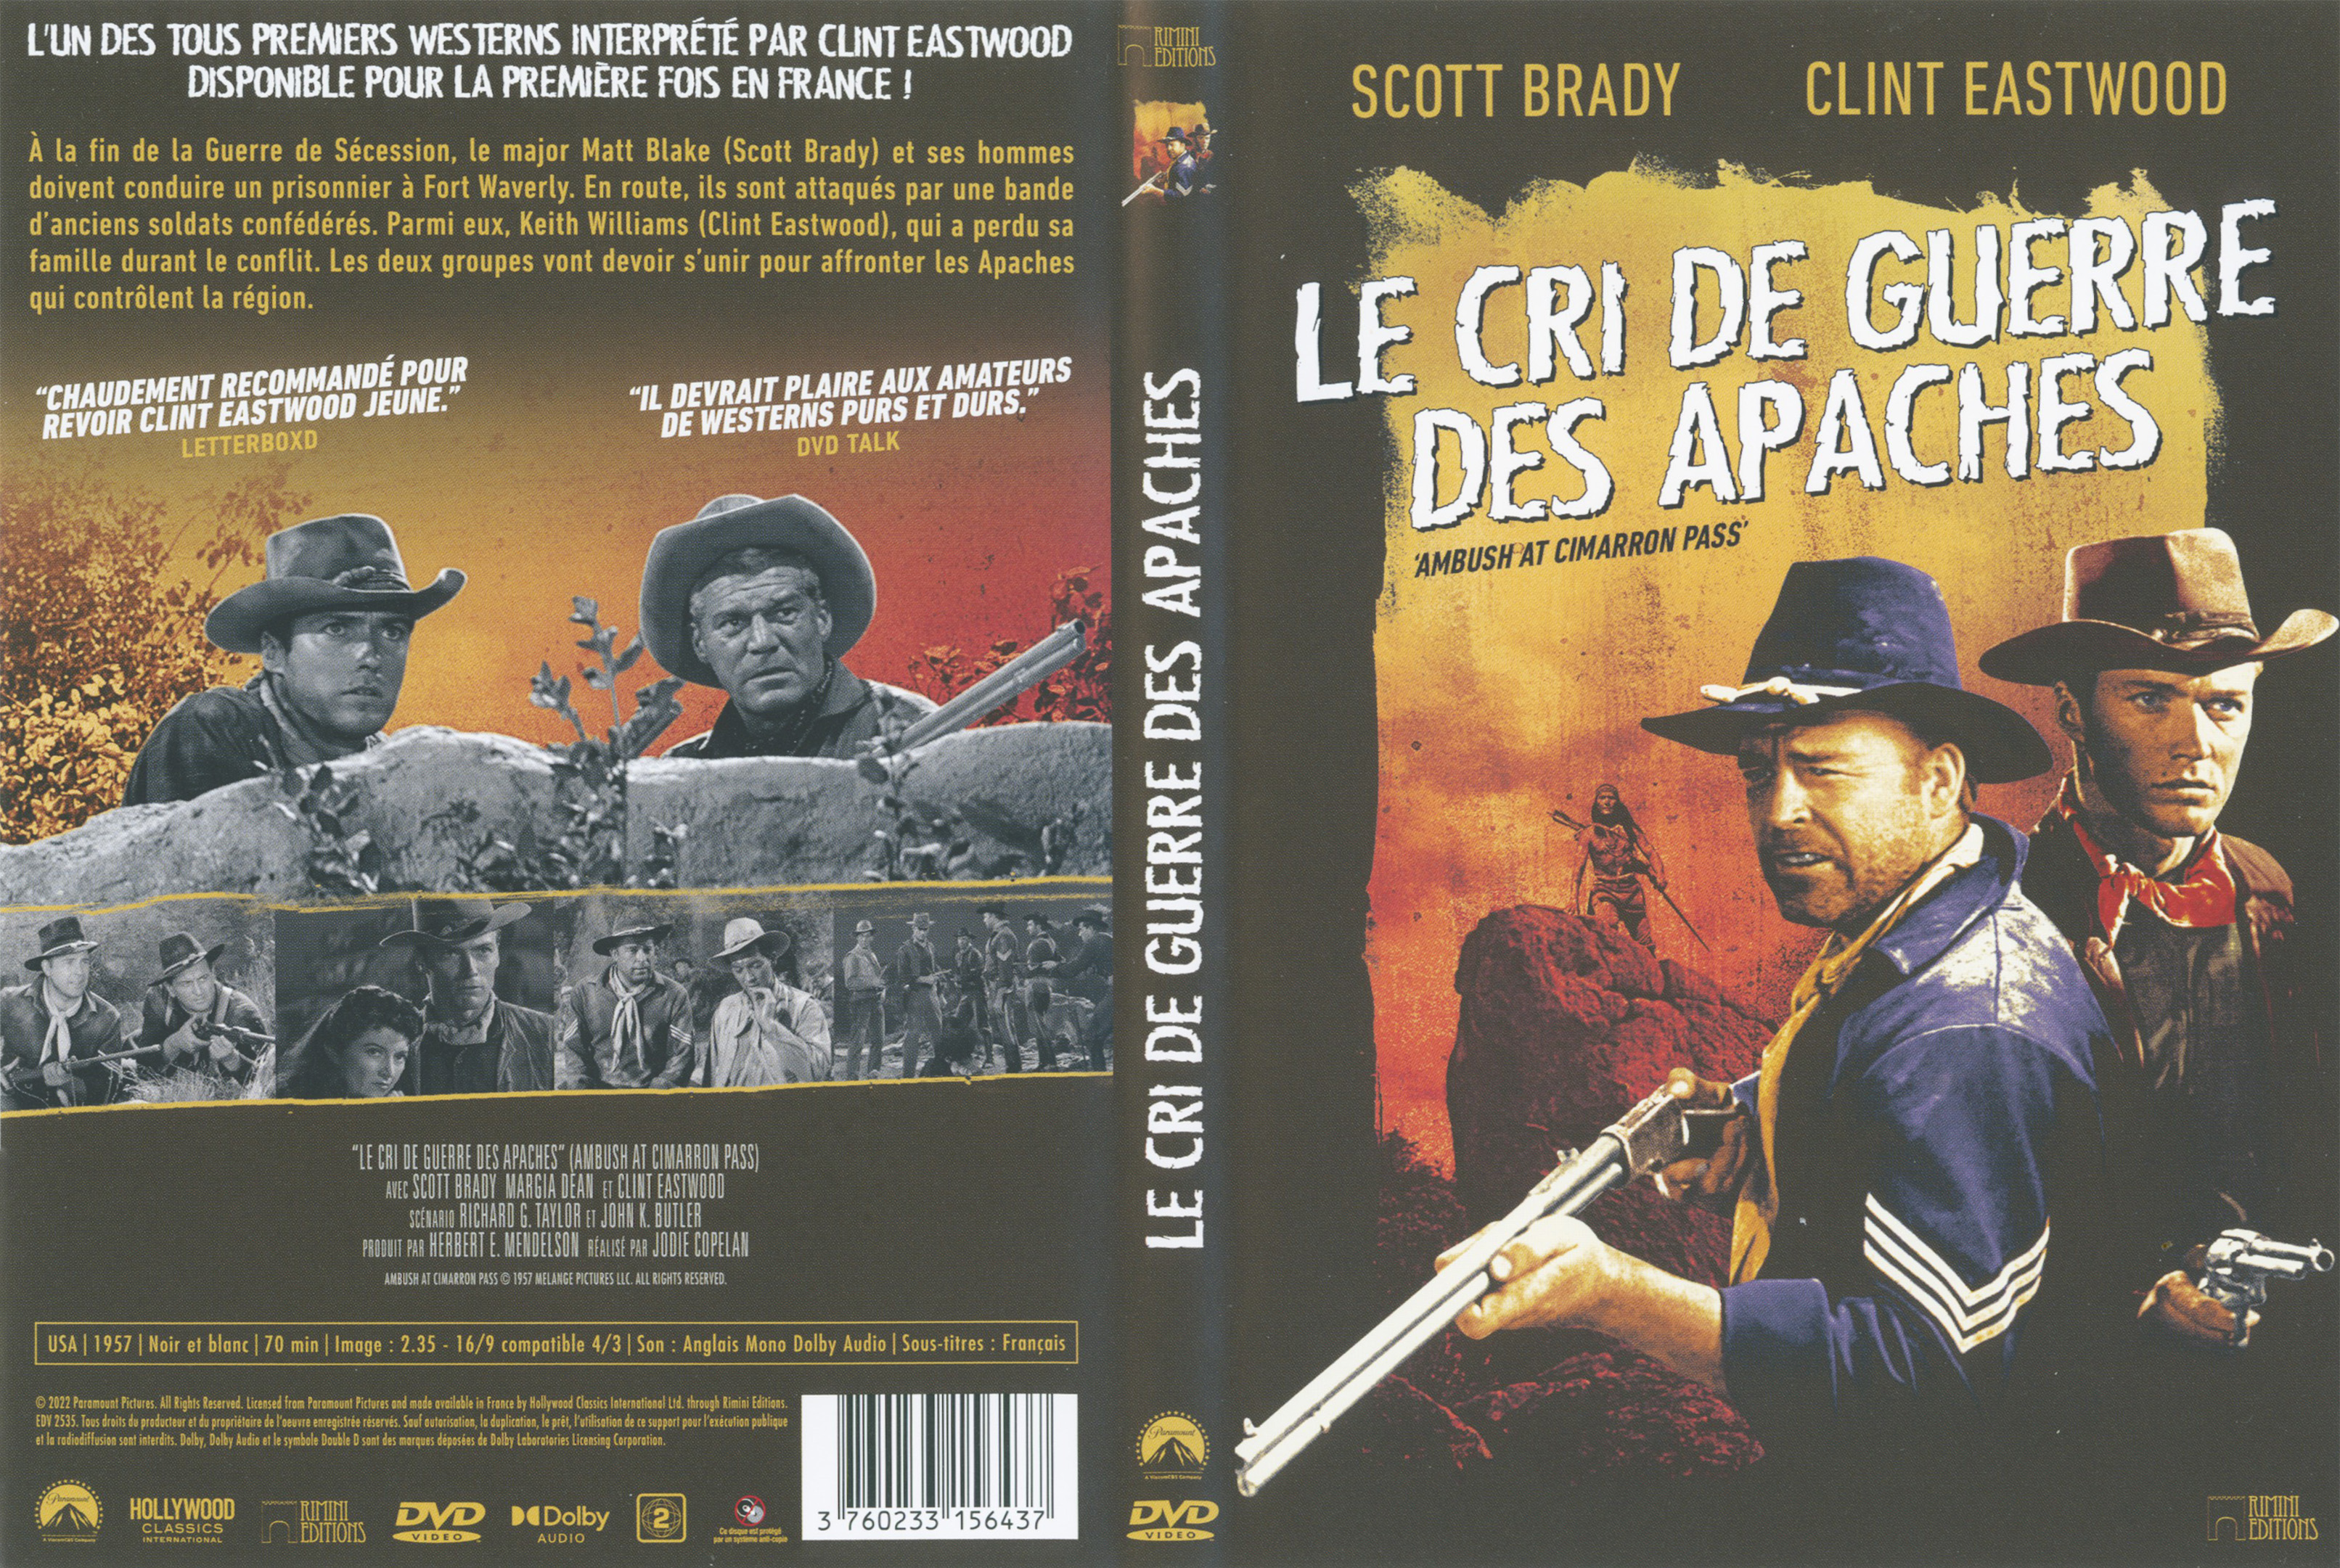 Jaquette DVD Le cri de guerre des apaches